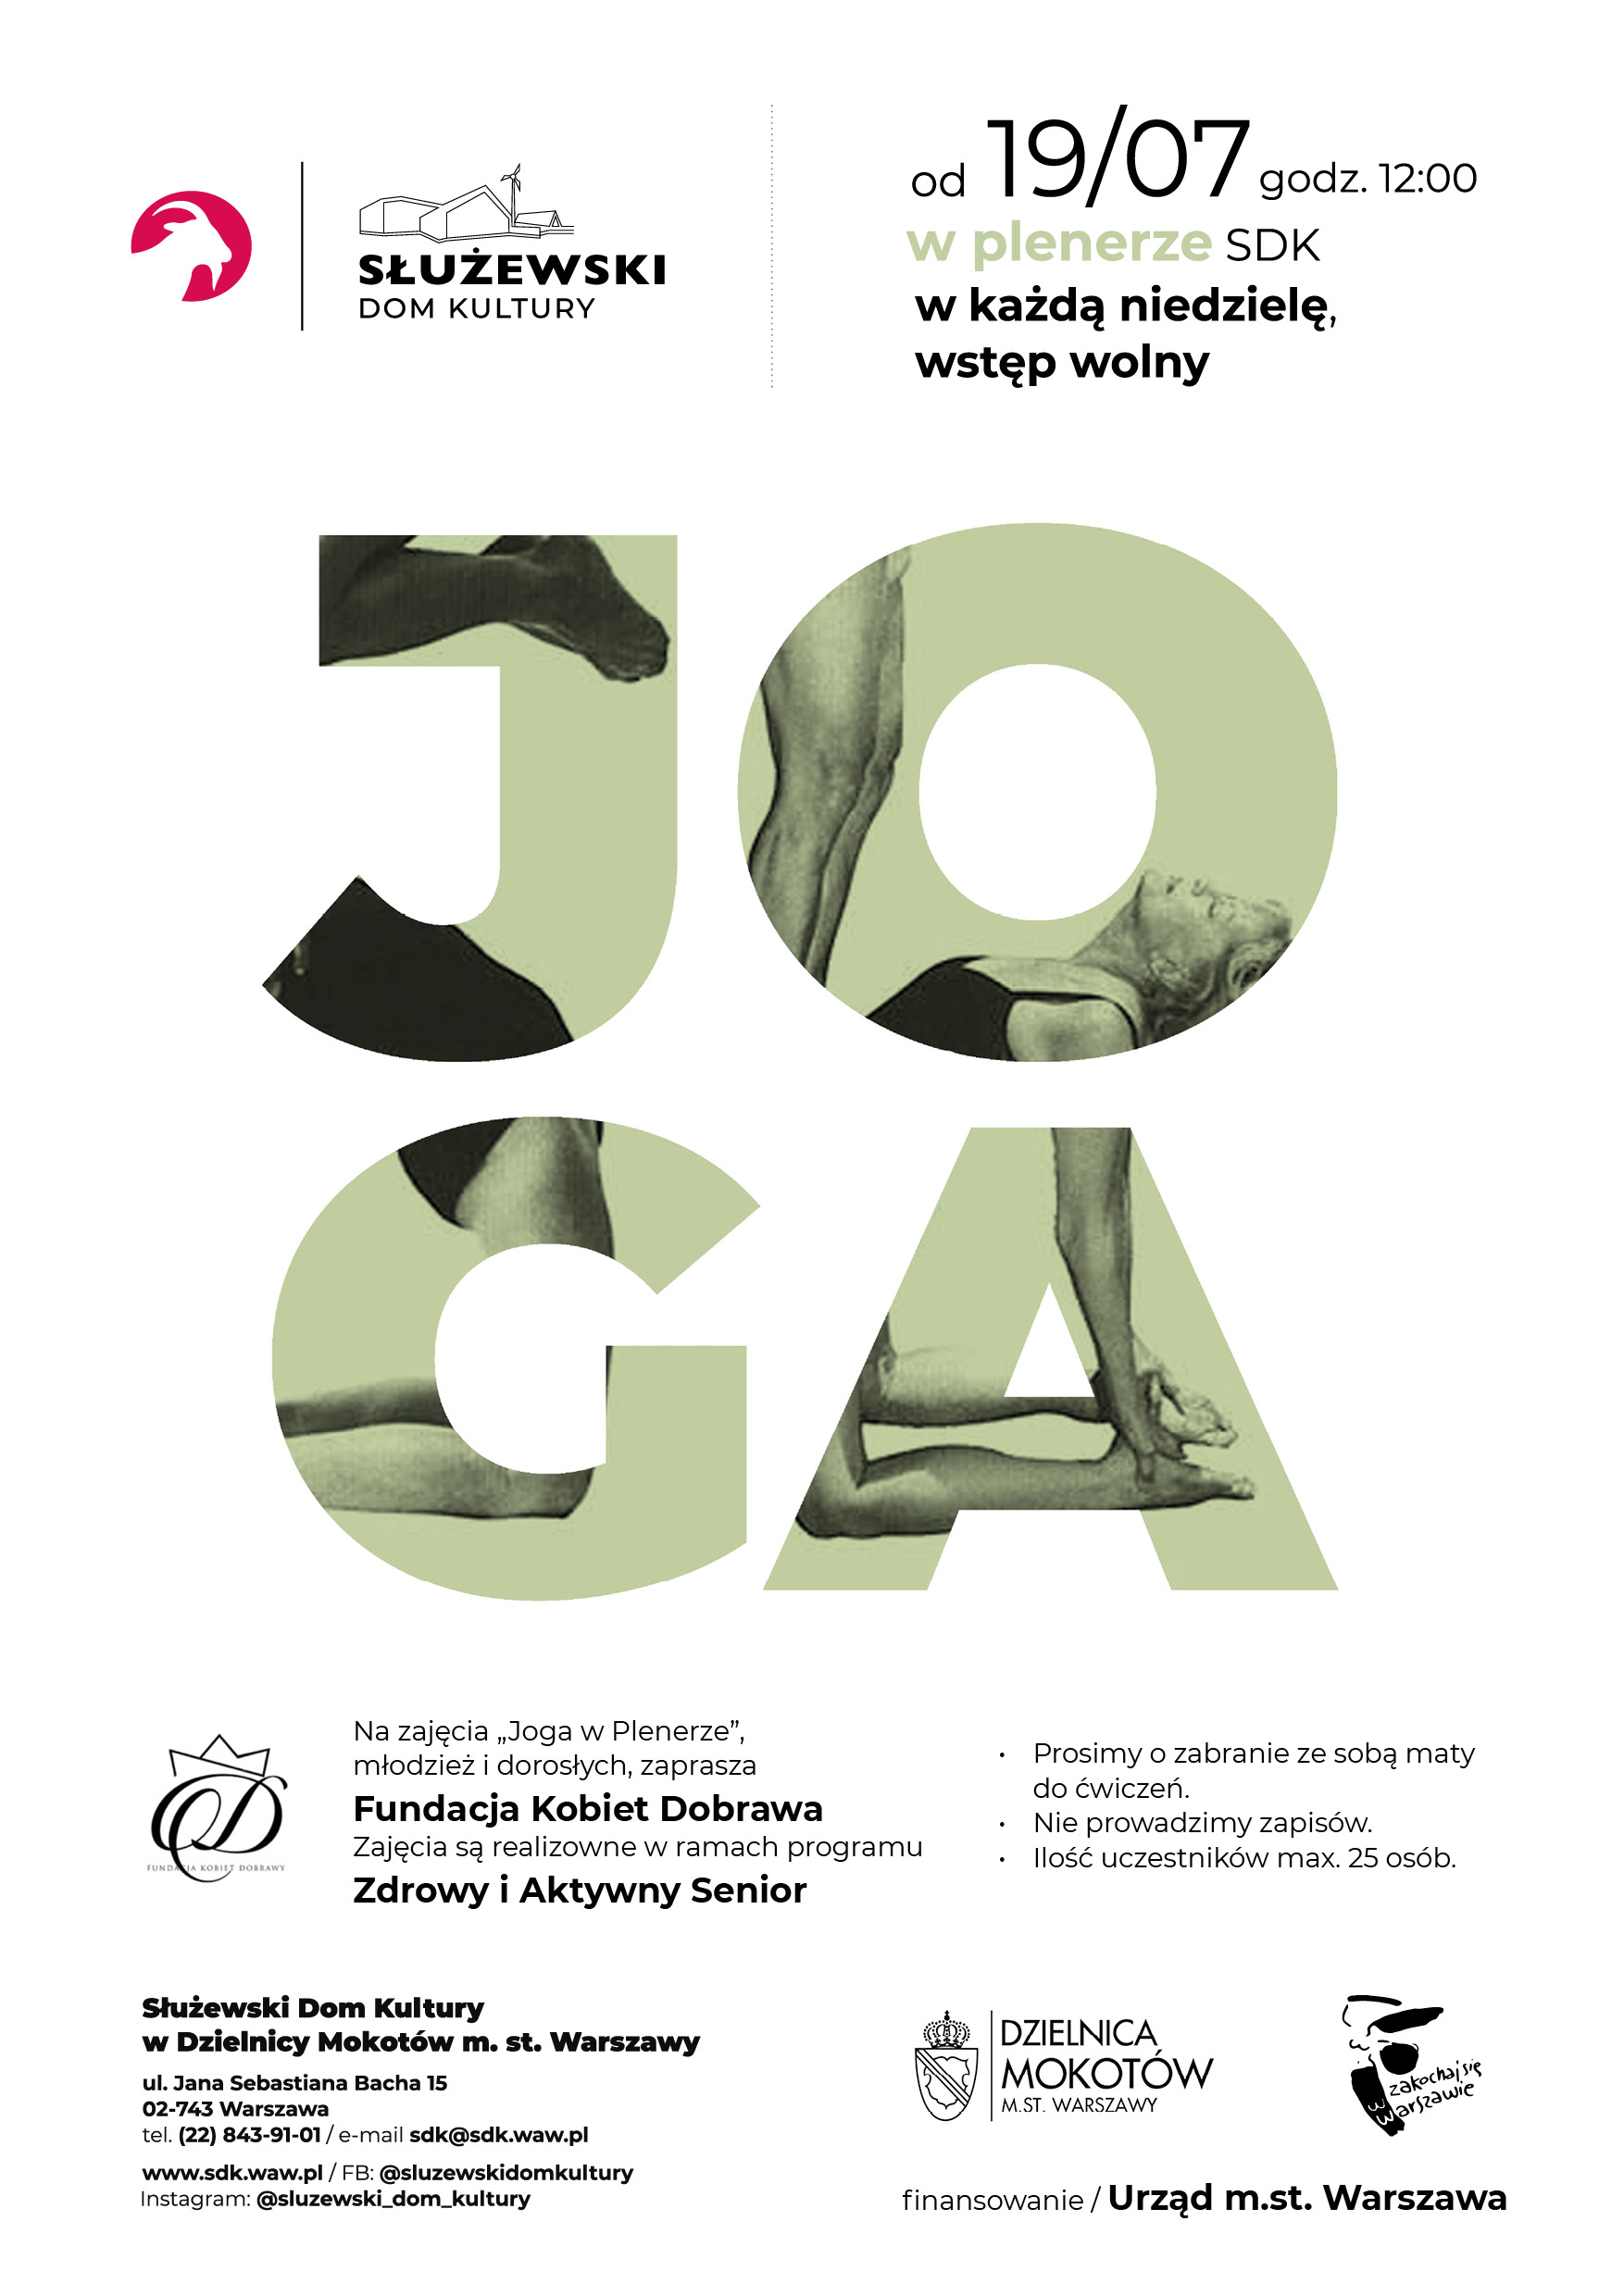 Plakat przedstawia typograficzną ilustrcję zajęć JOGA w PLenerze